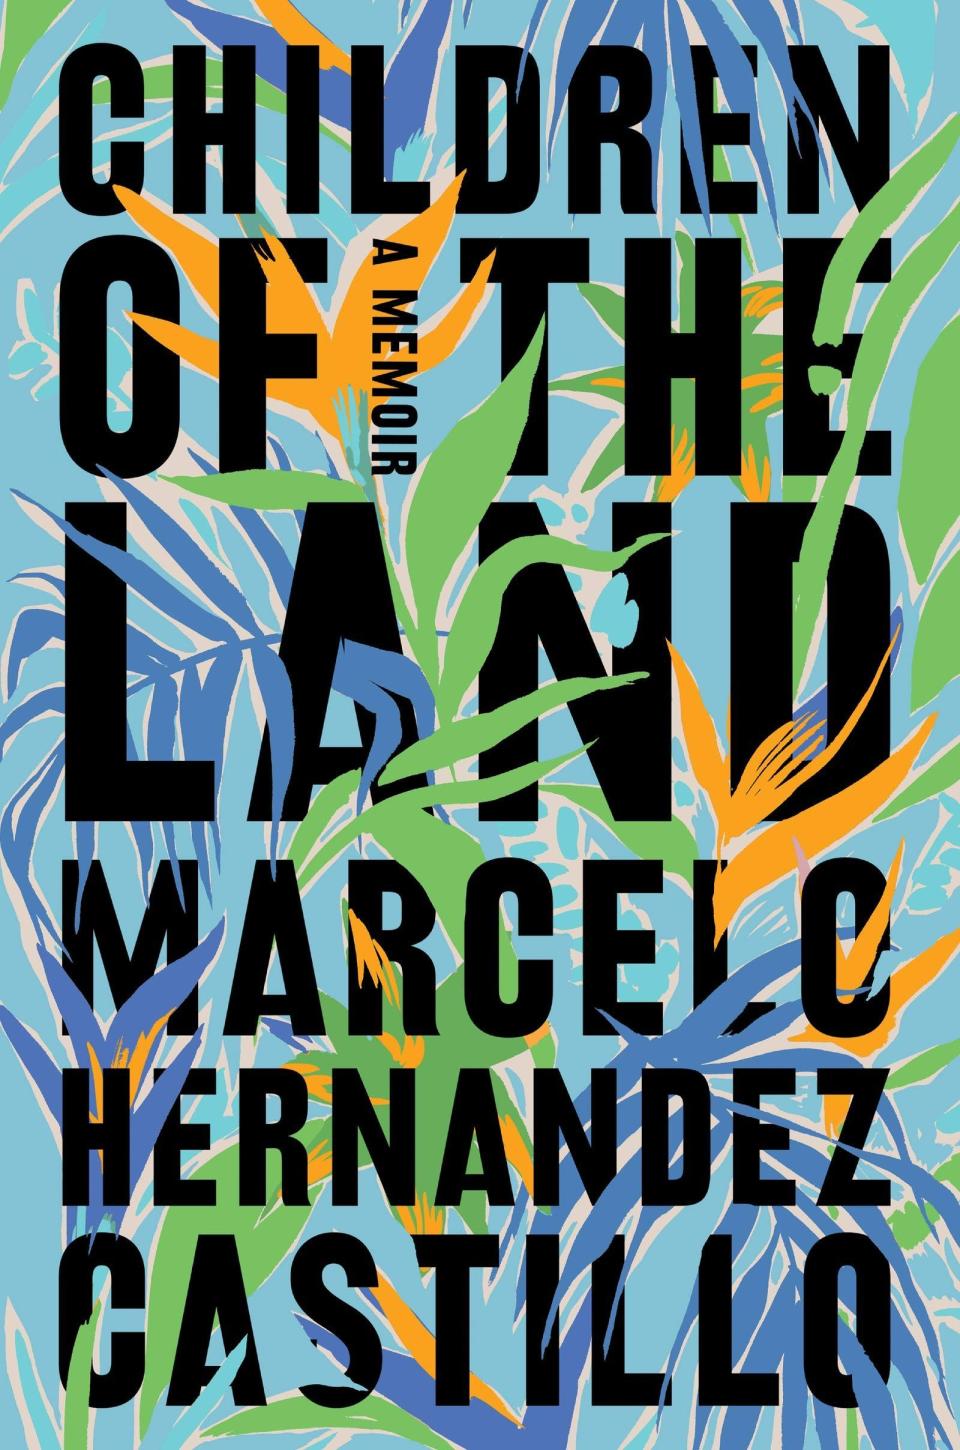 51) 'Children of the Land' by Marcelo Hernandez Castillo